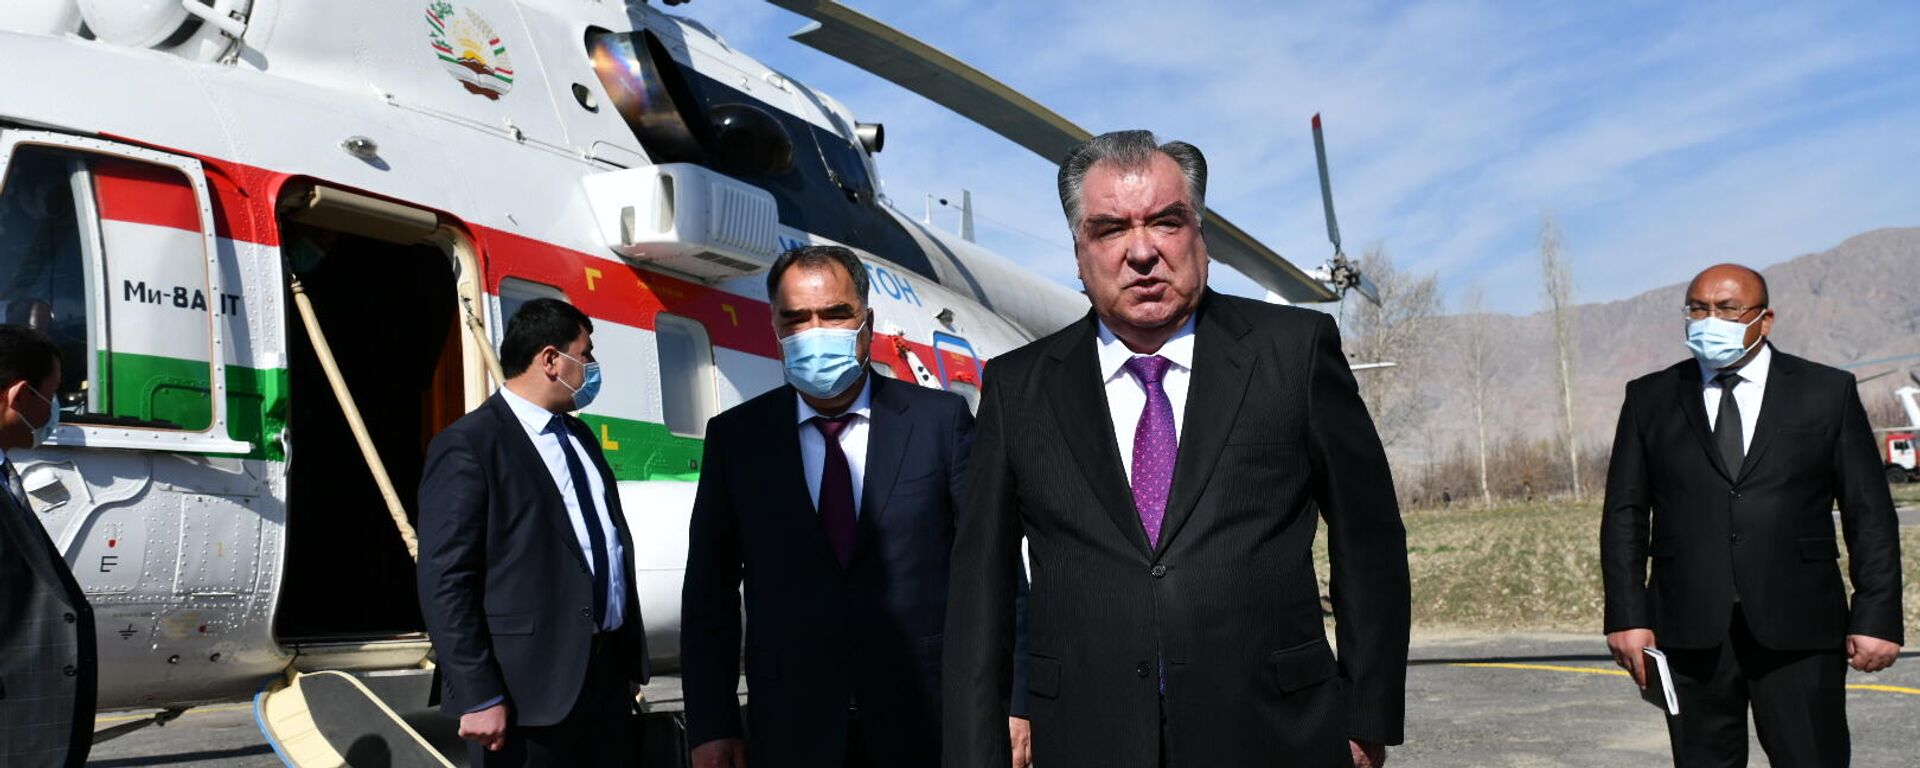 Визит президента Таджикистана Эмомали Рахмона в Ворух - Sputnik Таджикистан, 1920, 09.04.2021